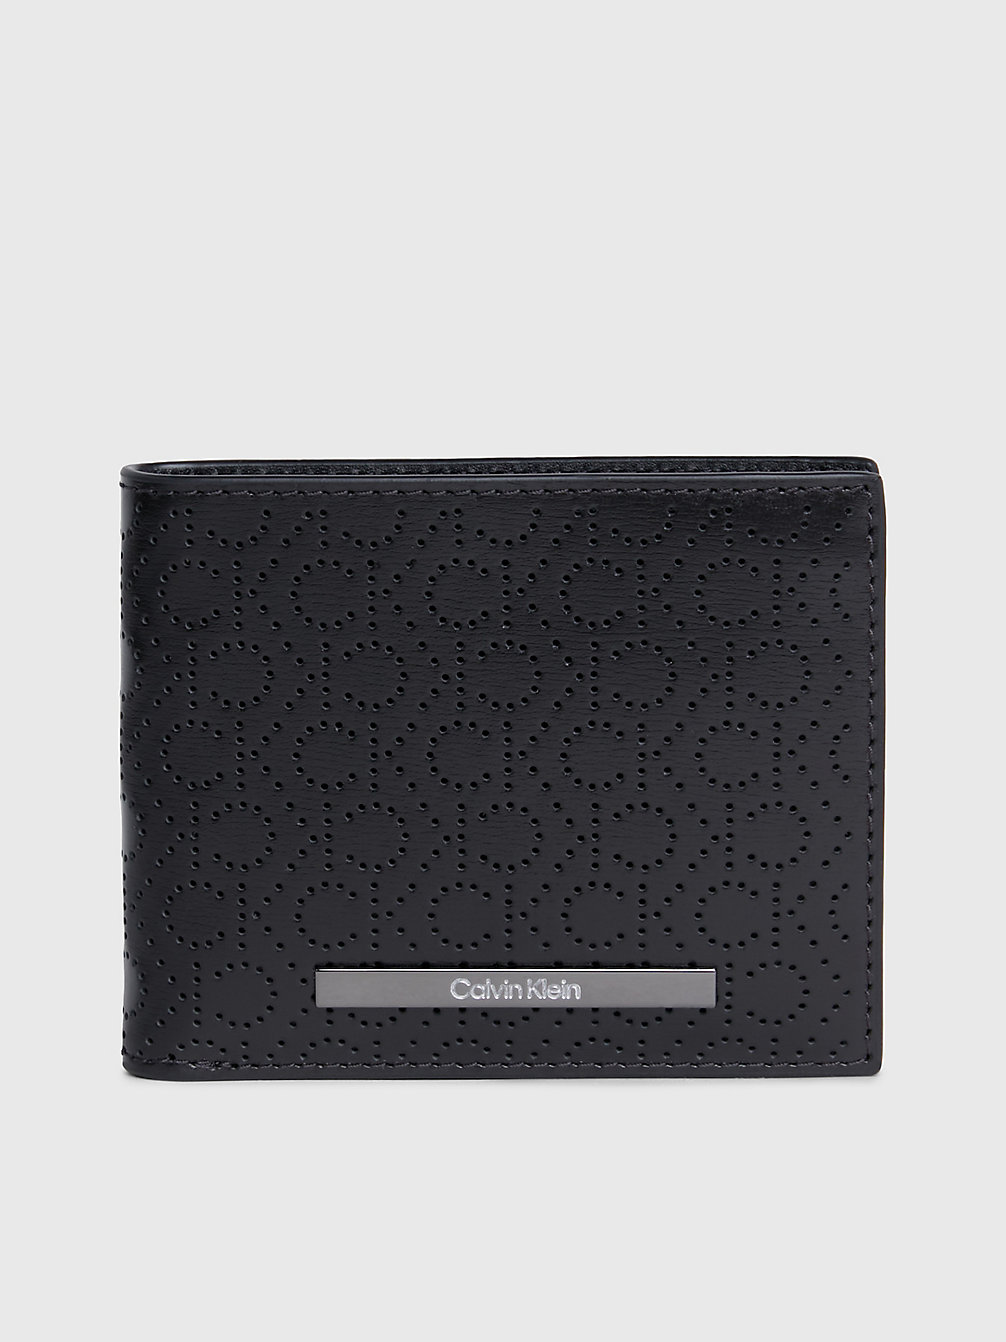 CK MONO PERF BLACK Portafoglio Porta Banconote Rfid In Pelle Con Logo Slim undefined Uomini Calvin Klein